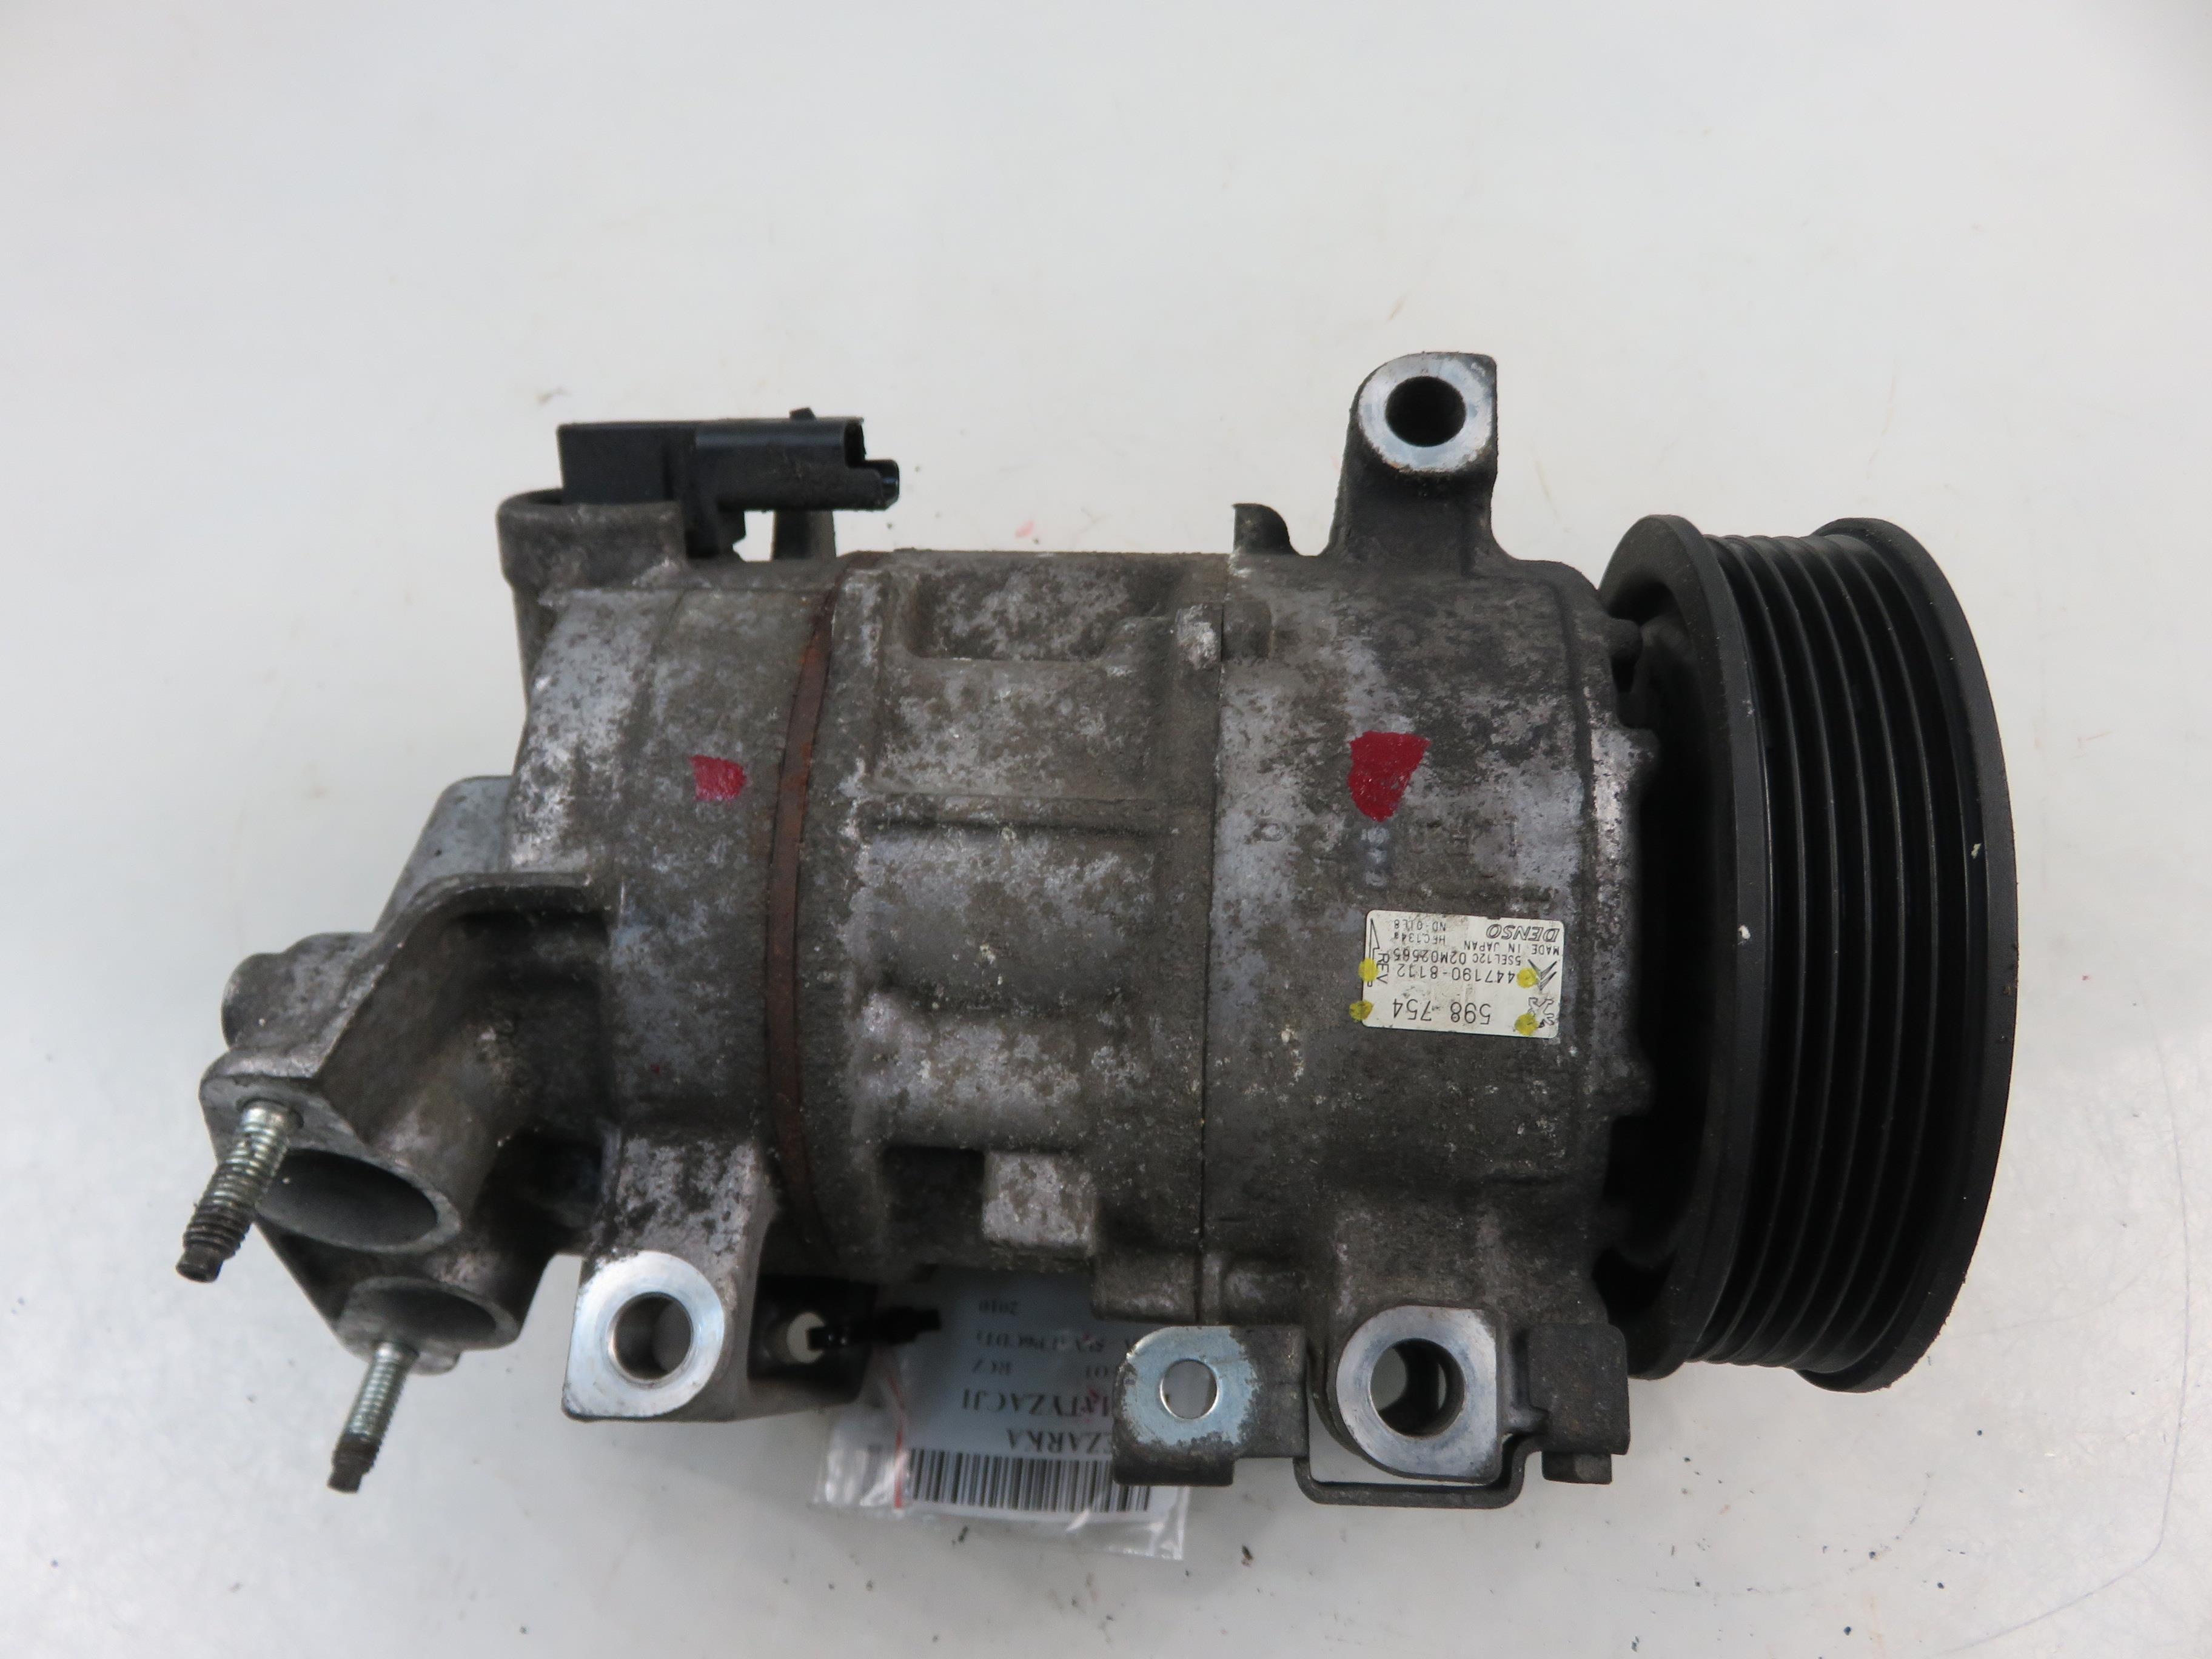 PEUGEOT RCZ 1 generation (2010-2014) Air Condition Pump 4471908112, 598754 23926729